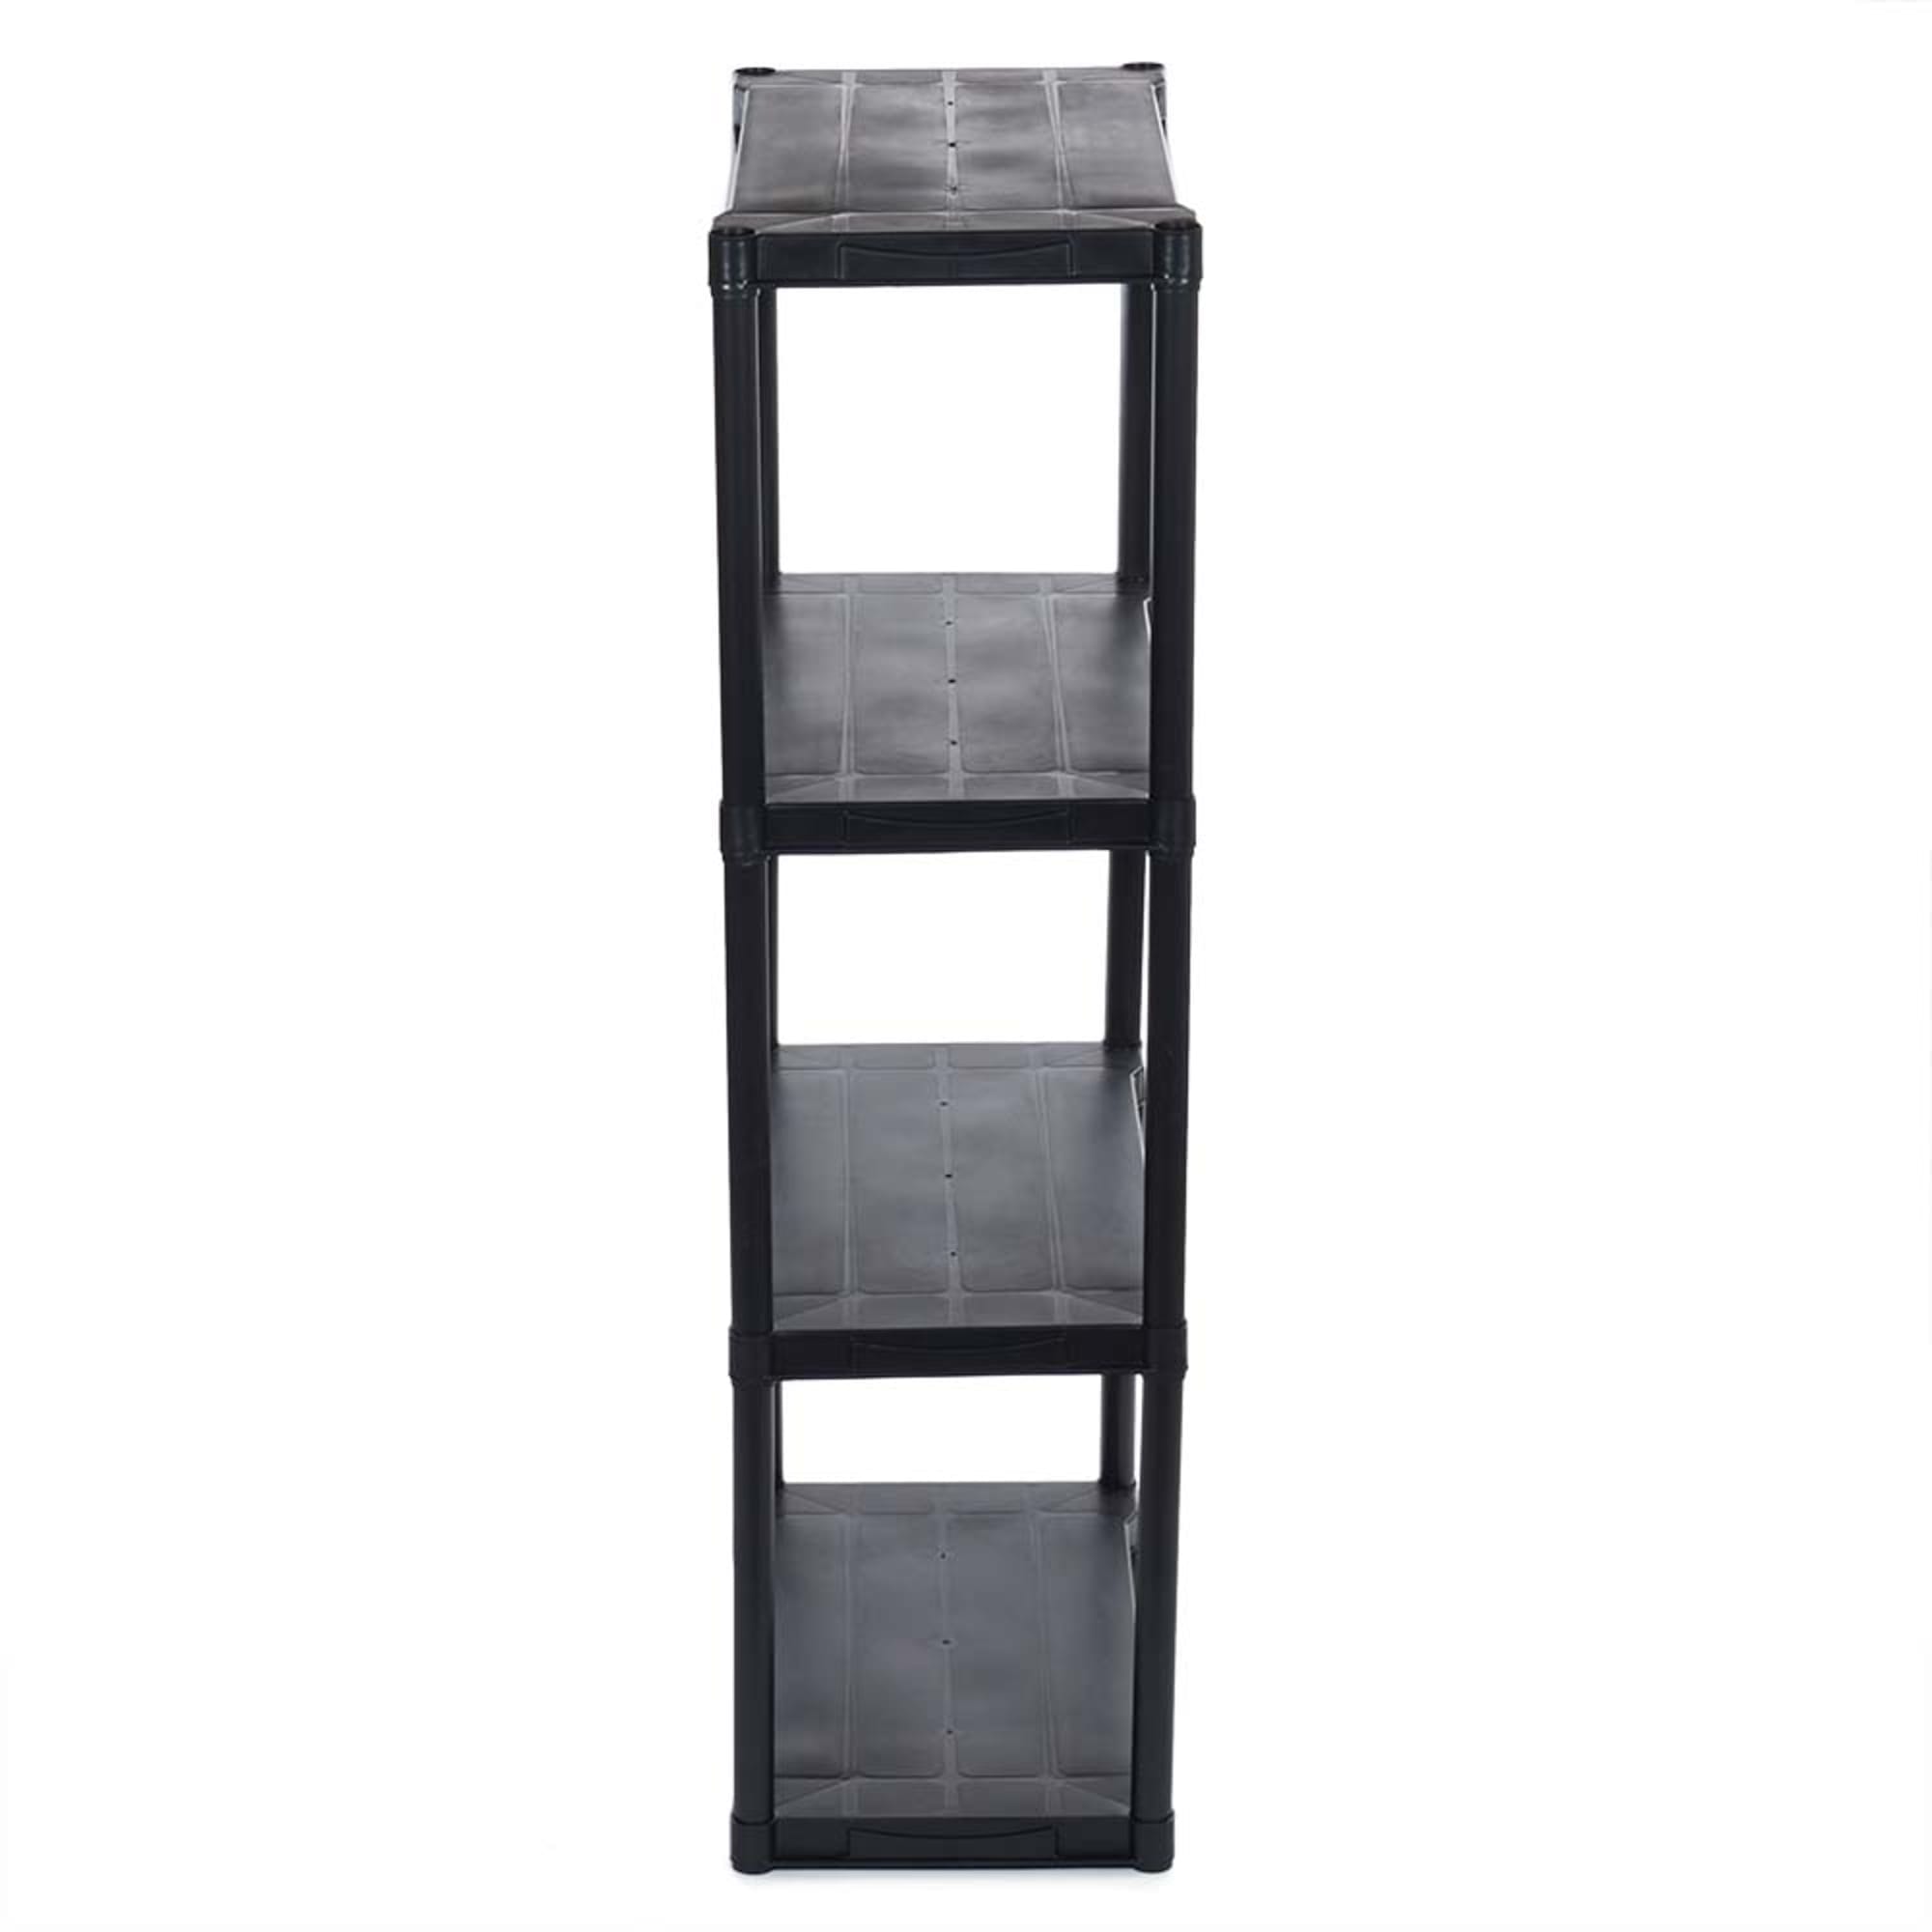 Home Basics 4 Tier Plastic Shelf, (55-inch), Black $30.00 EACH, CASE PACK OF 1